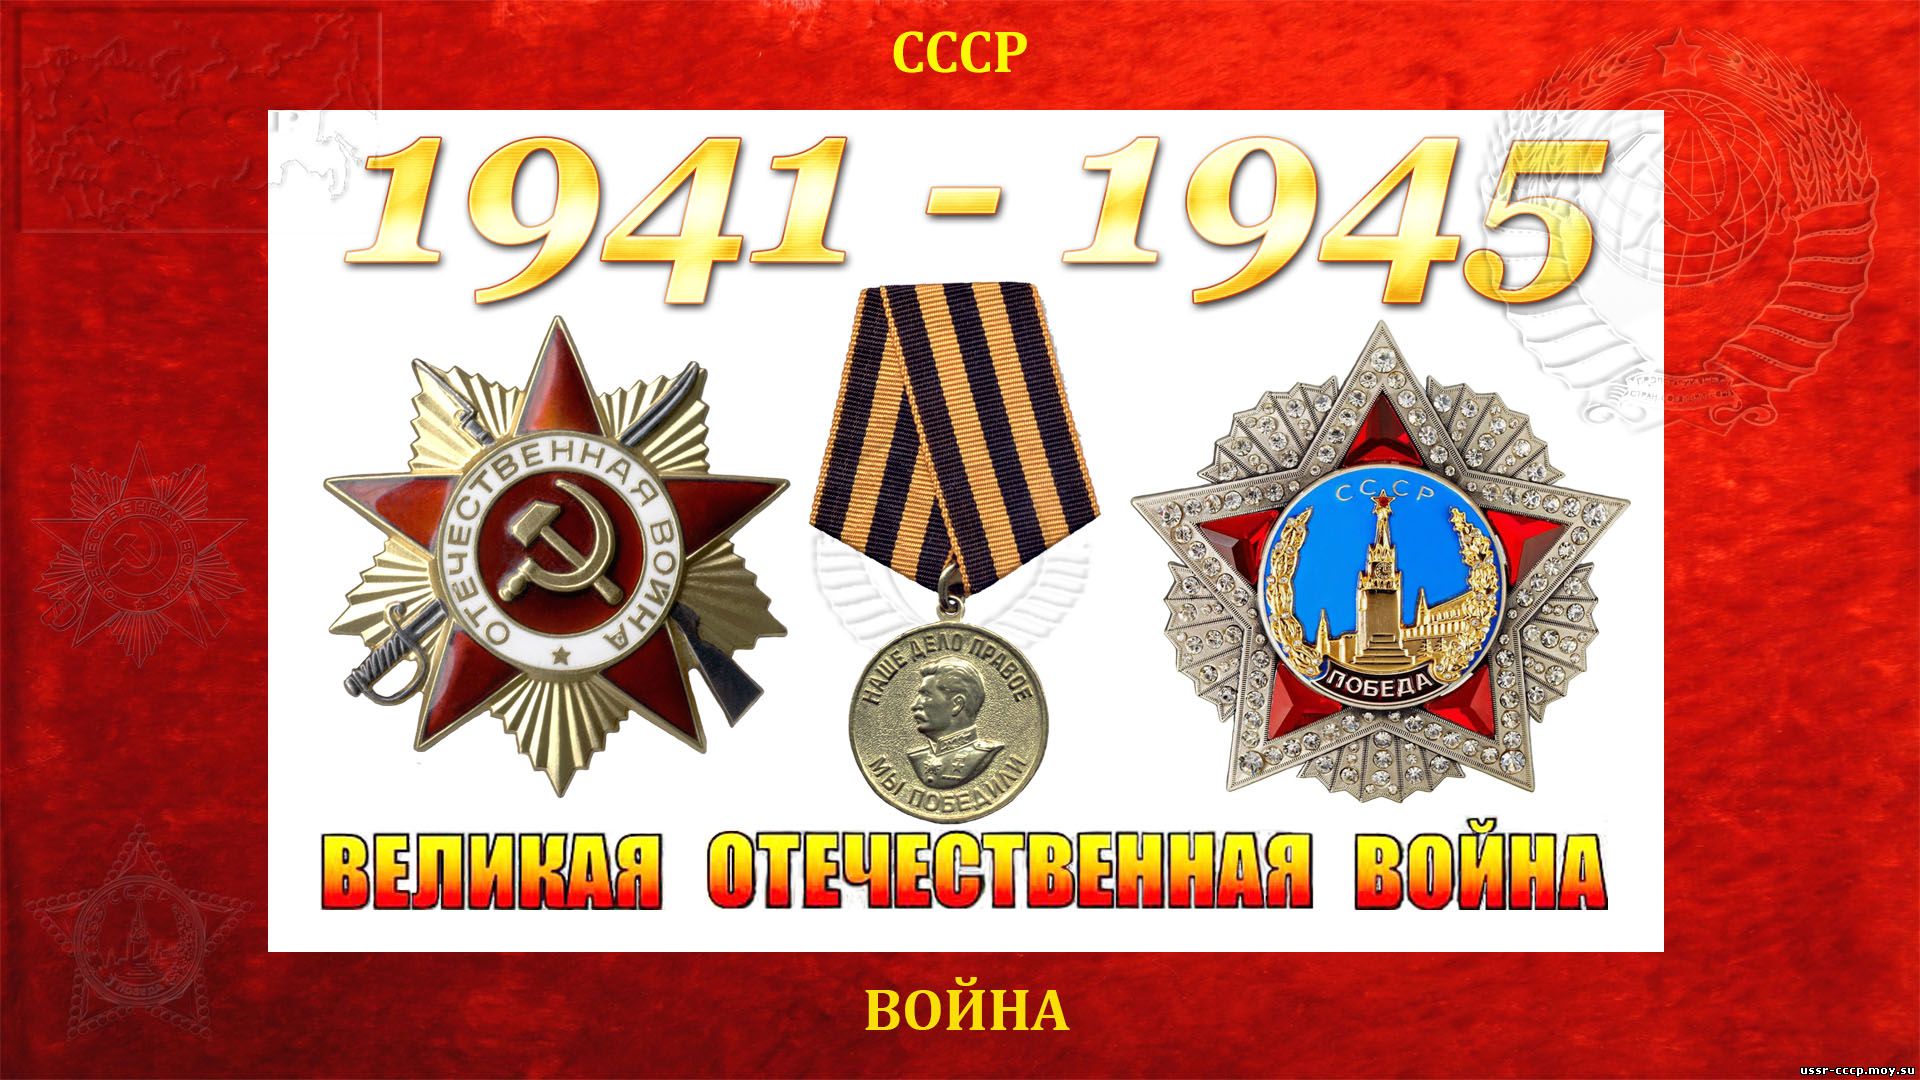 Великая Отечественная война — СССР-Германия (22.06.1941 — 09.05.1945) (повествование)